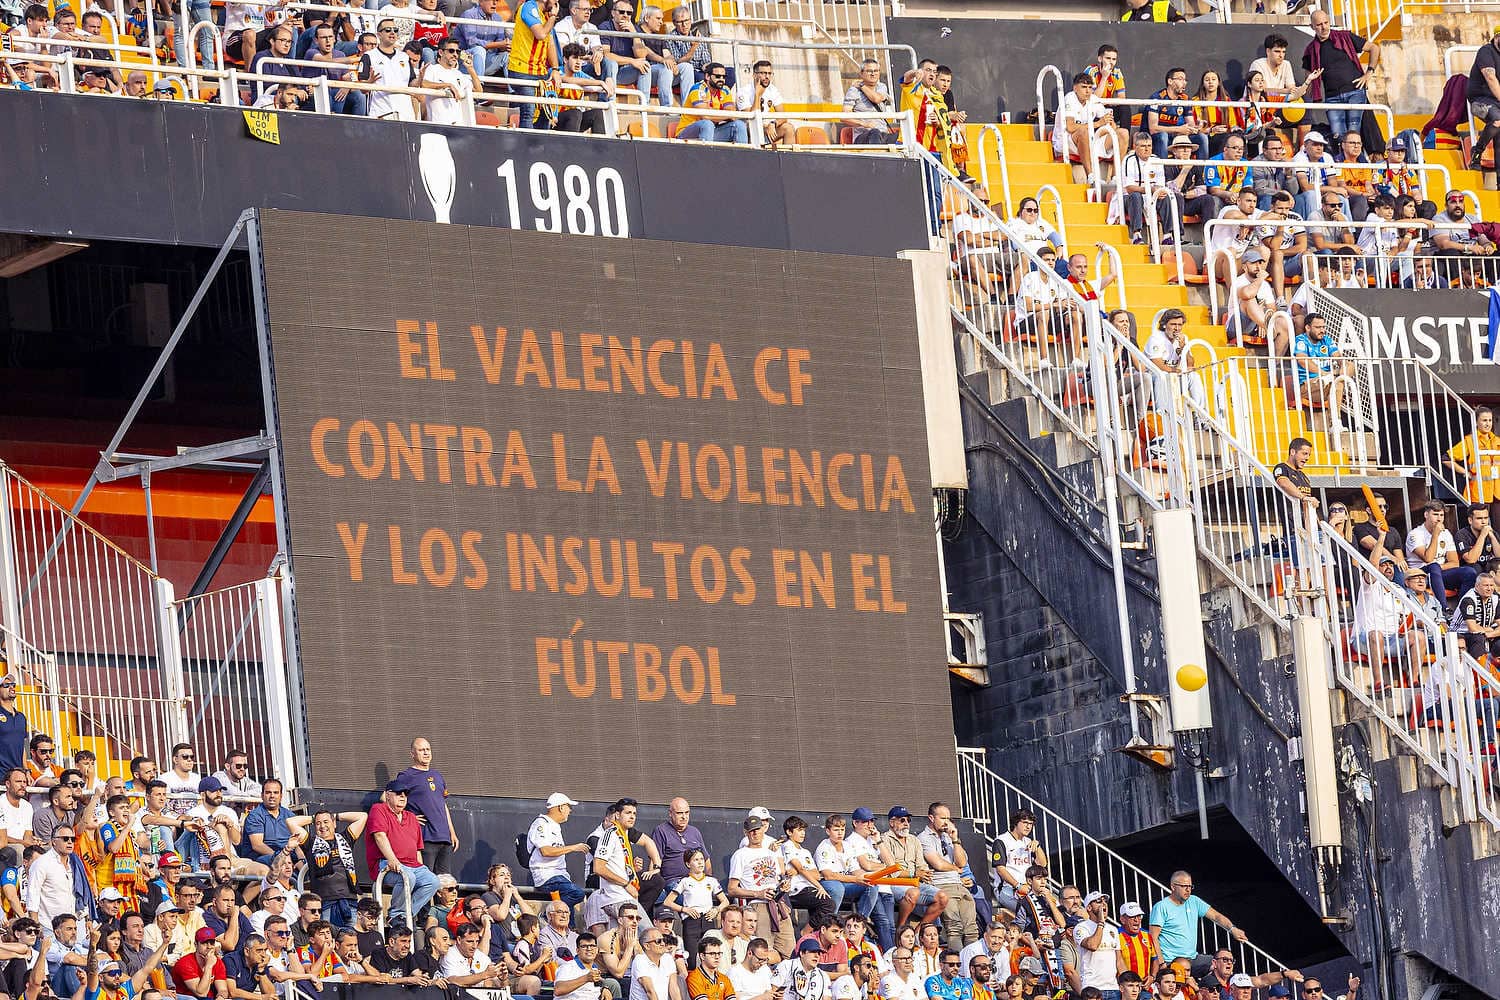 El Valencia, por el videomarcador, censurando los insultos racistas a Vinícius, habituales en el fútbol español.